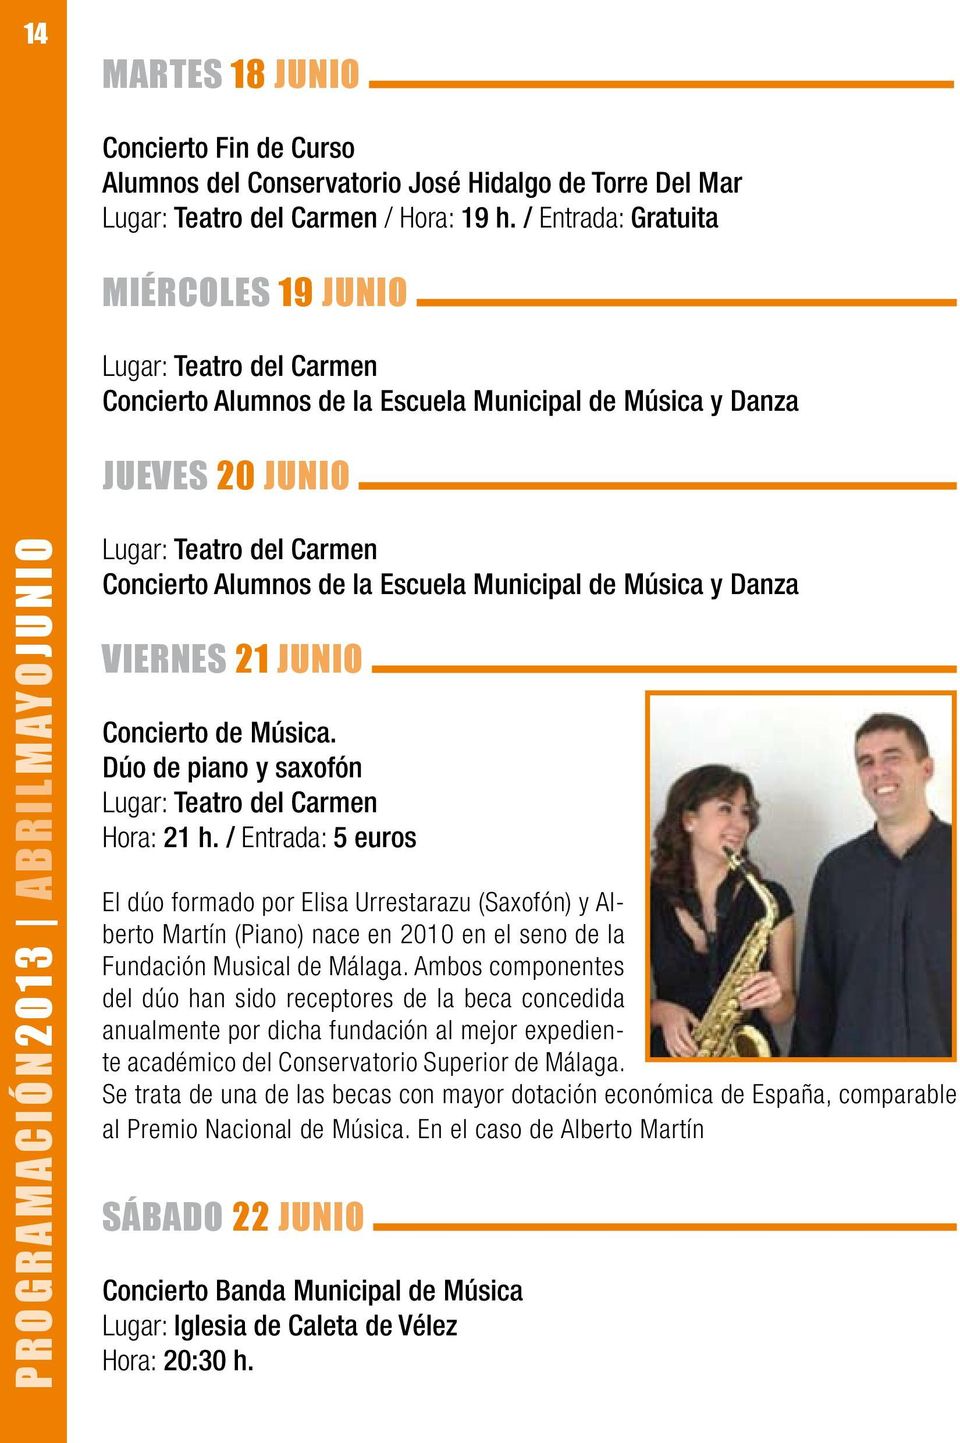 Concierto de Música. Dúo de piano y saxofón / Entrada: 5 euros El dúo formado por Elisa Urrestarazu (Saxofón) y Alberto Martín (Piano) nace en 2010 en el seno de la Fundación Musical de Málaga.